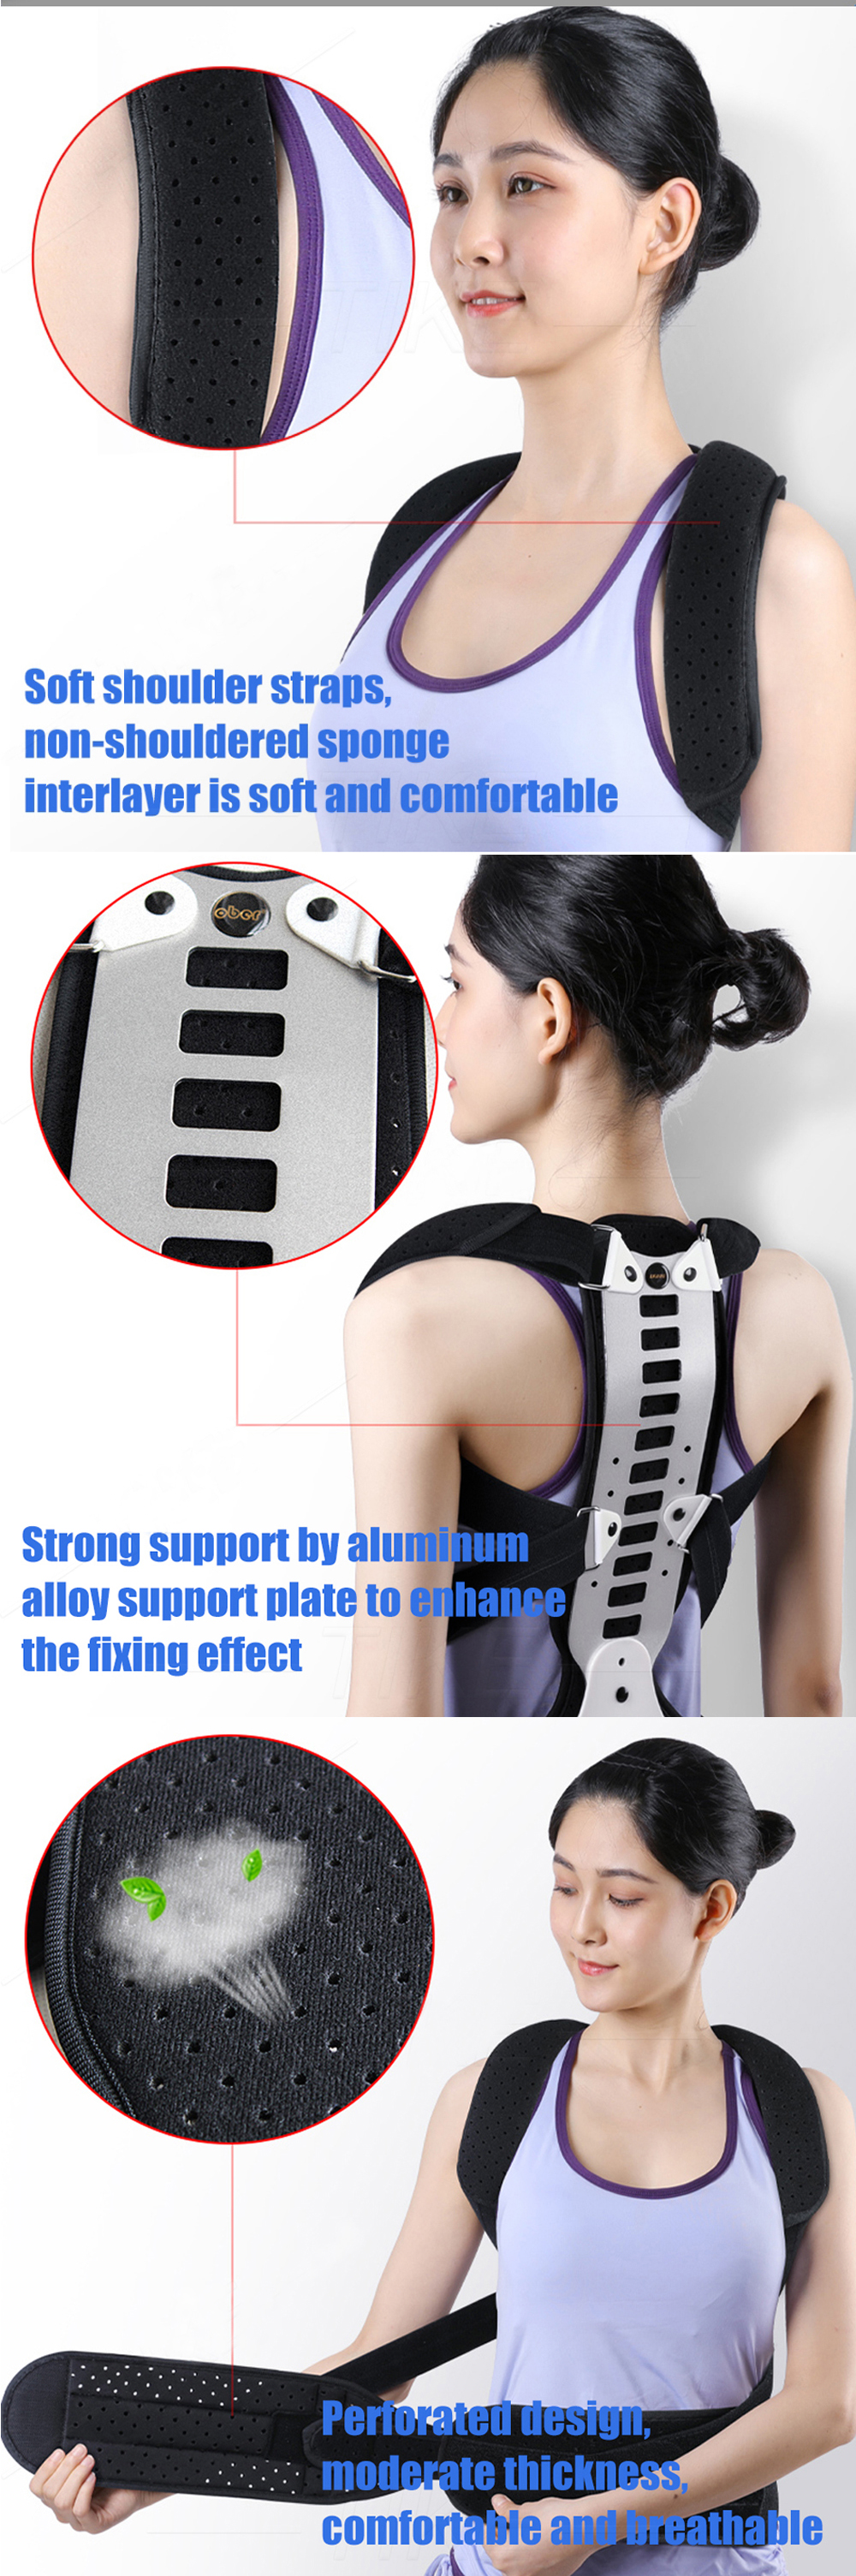 OBER-Metal-Adjustable-Back-Shoulder-Posture-Corrector-Brace-Spine-Support-Hunching-Back-Trainer-Pain-1927844-4